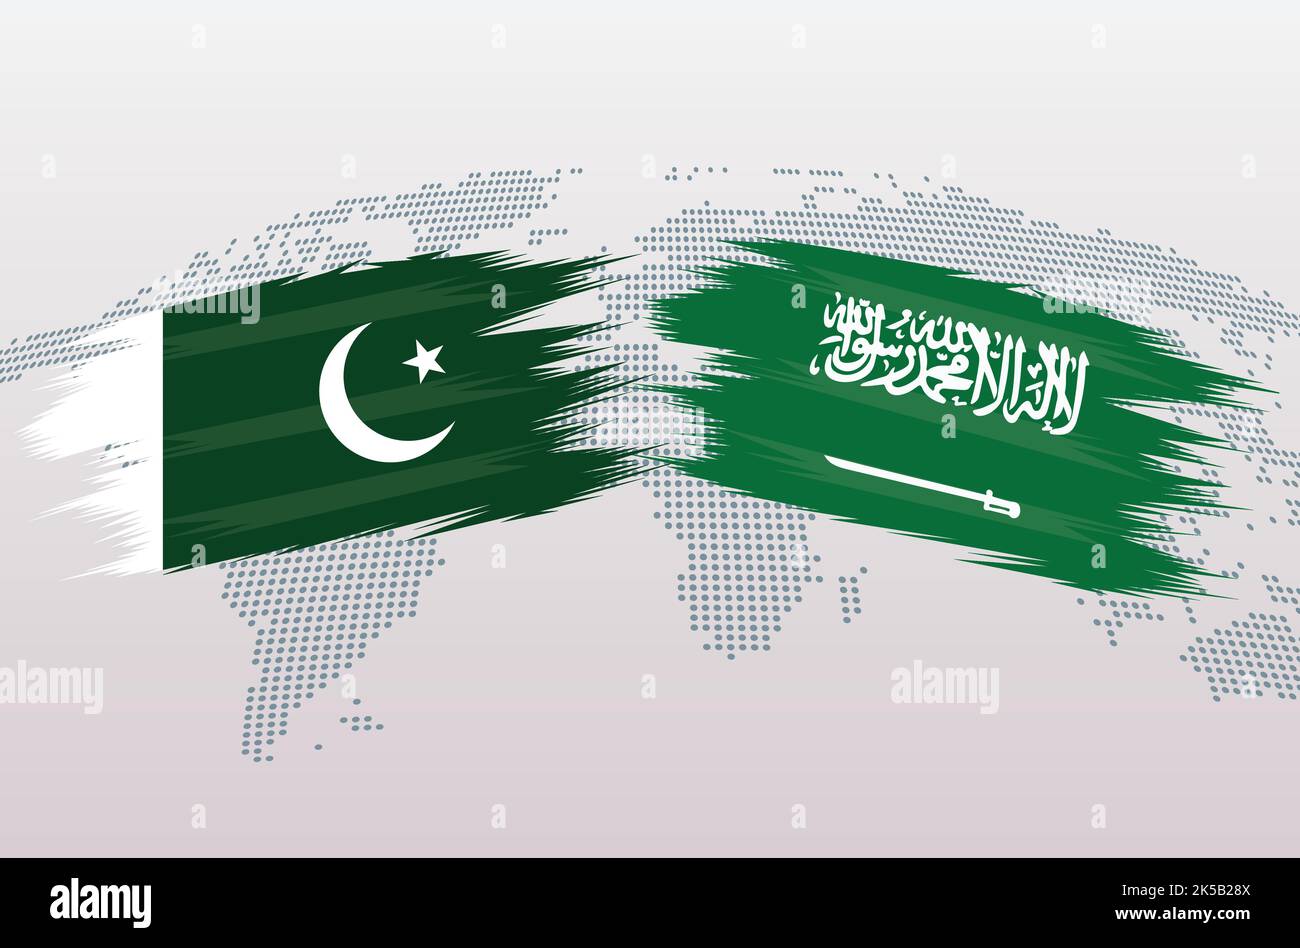 Banderas DE PAKISTÁN VS ARABIA SAU República Islámica de Pakistán VS KSA banderas de Arabia Saudita, aisladas sobre fondo gris del mapa mundial. Ilustración vectorial. Ilustración del Vector